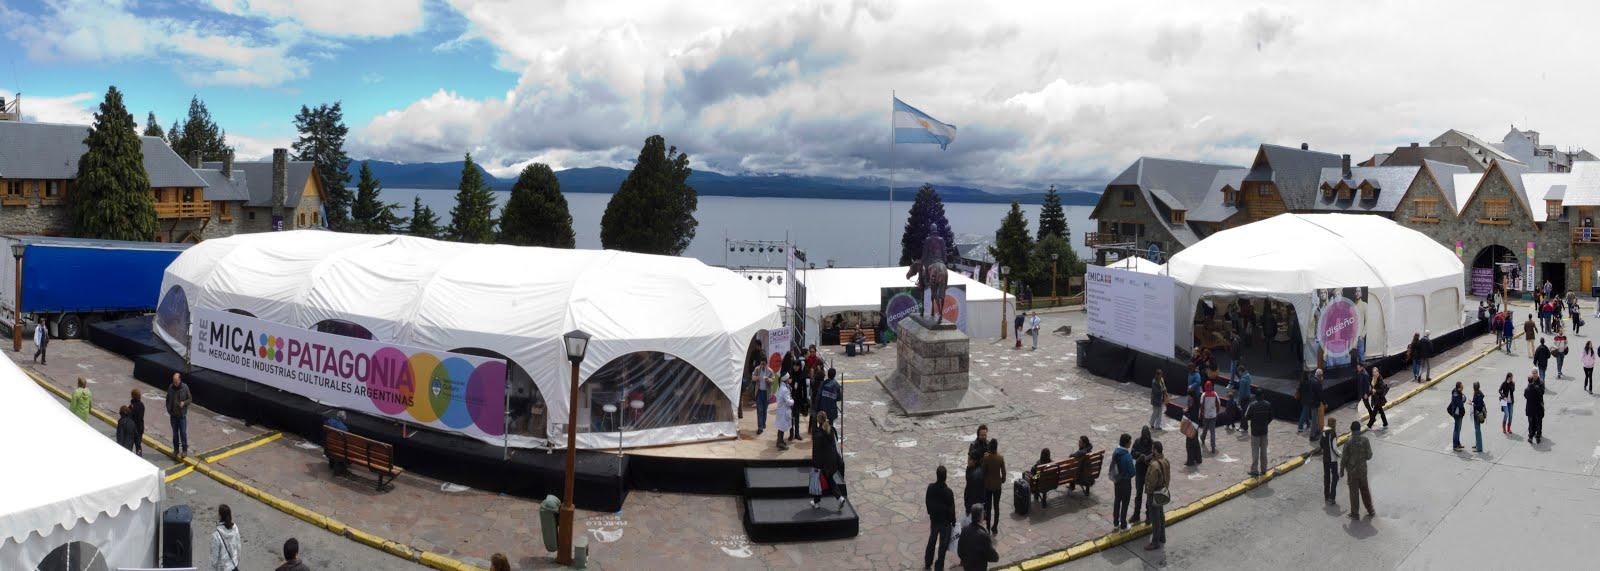 Desde el viernes, Bariloche es sede de tres mega eventos culturales - Programaci&oacute;n completa